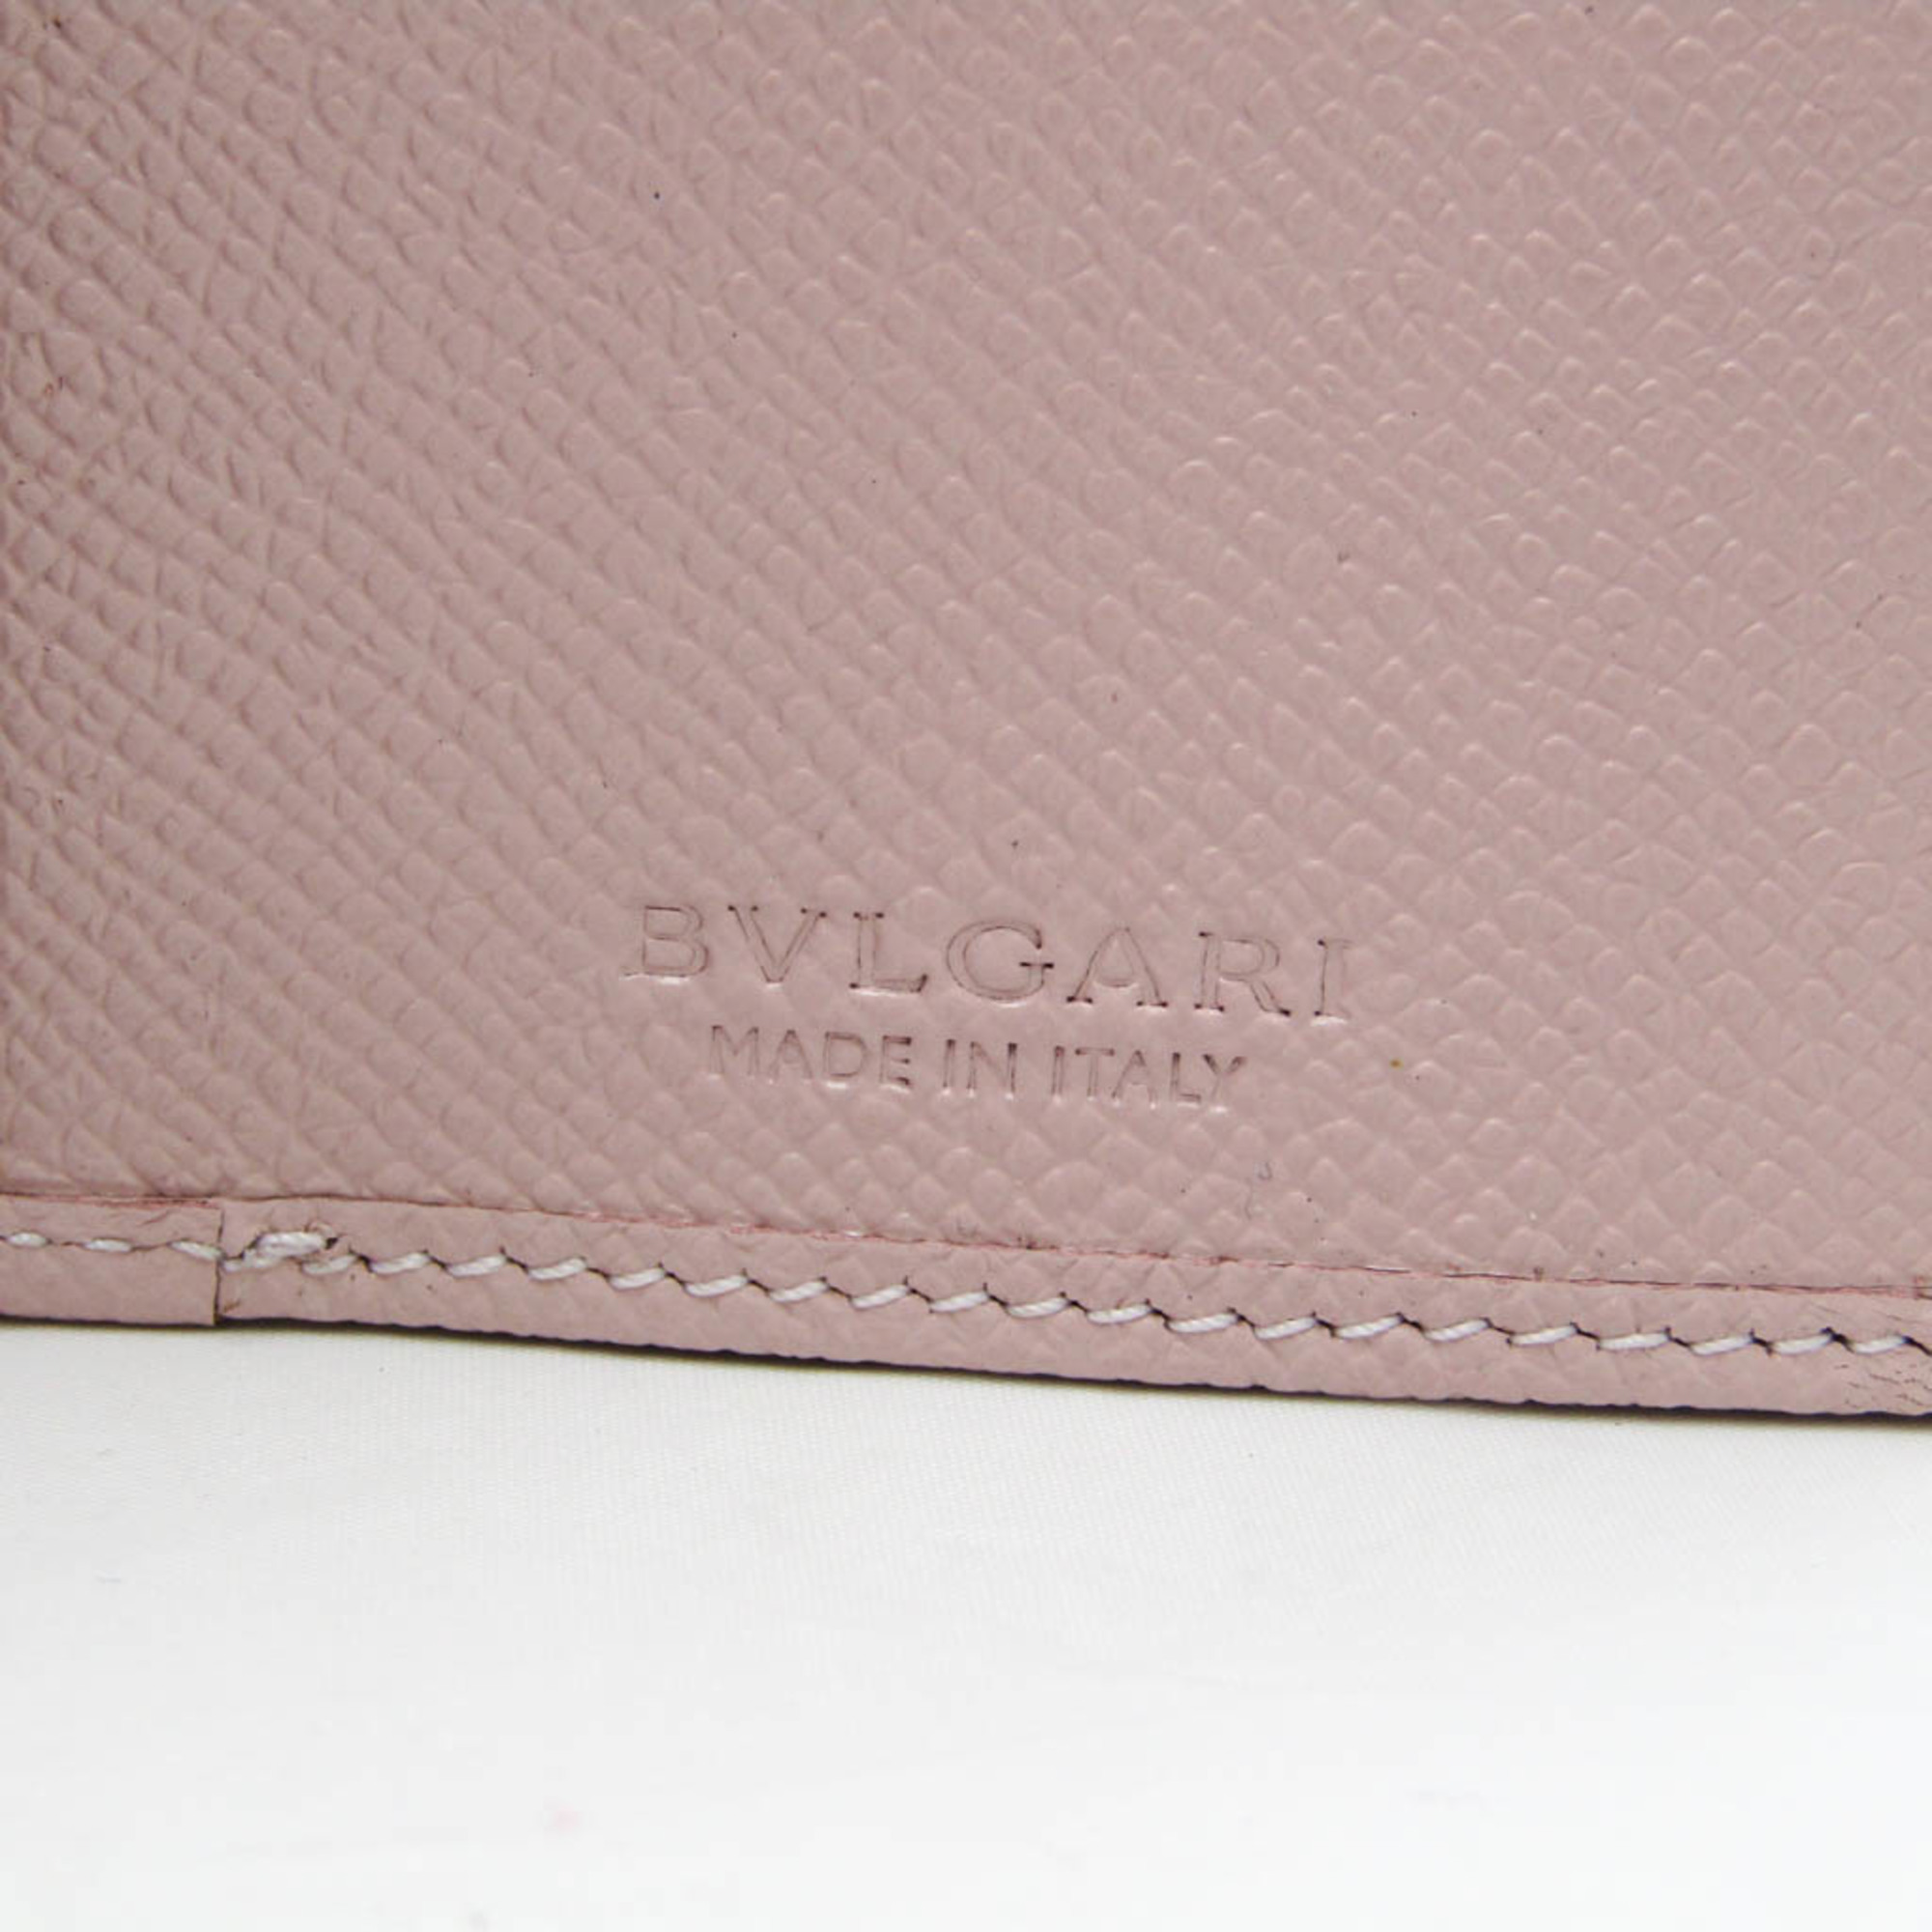 Bvlgari Bvlgari Bvlgari 30417 Women's Leather Long Wallet (bi-fold) Light Pink